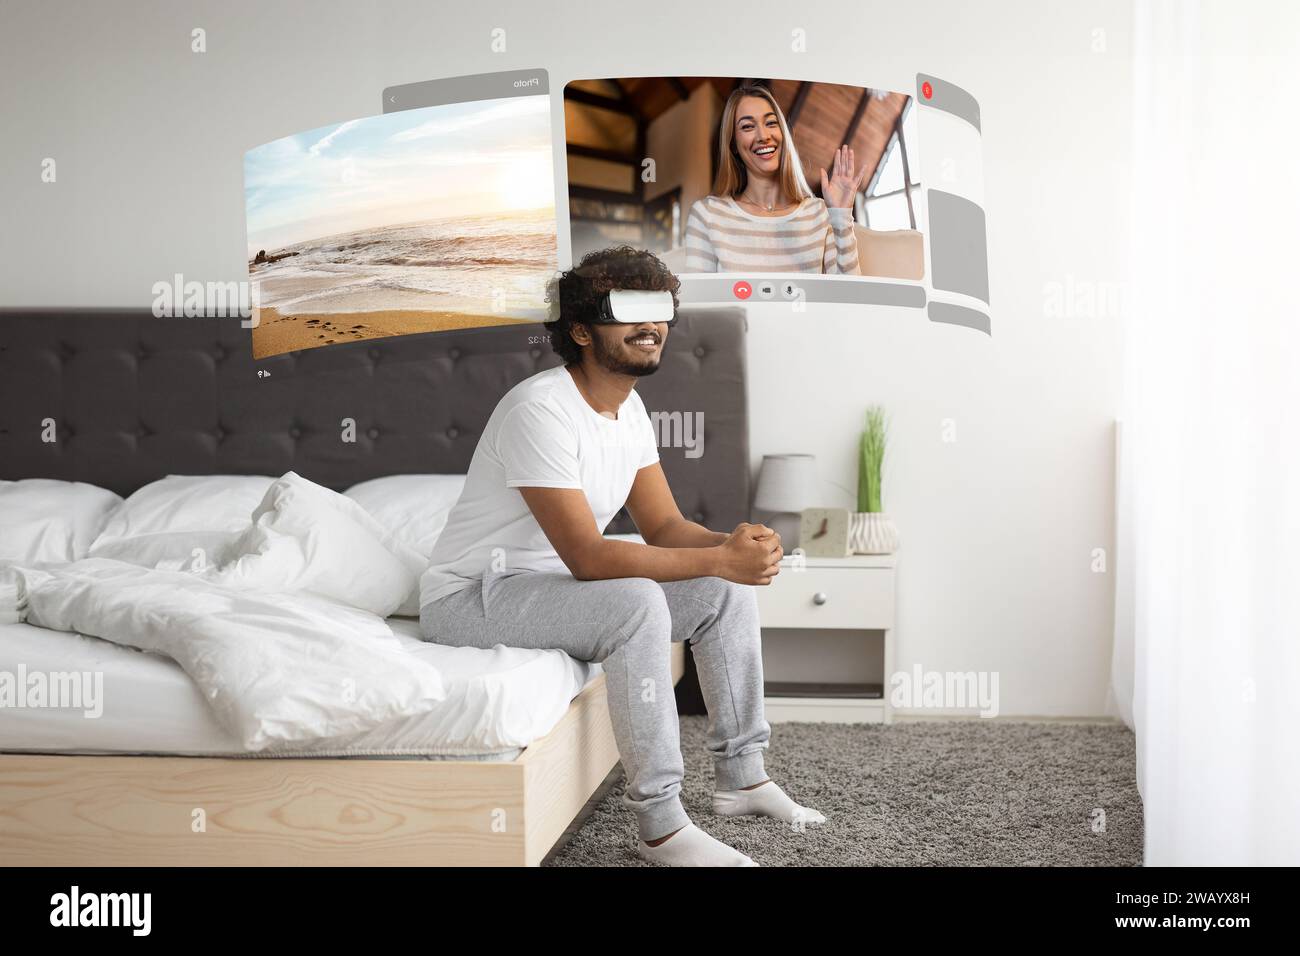 Der junge Mann nutzt VR, um Video-Chats mit seiner weit lebenden Freundin zu bereichern und sich morgens zu Hause auf dem Bett auszuruhen Stockfoto